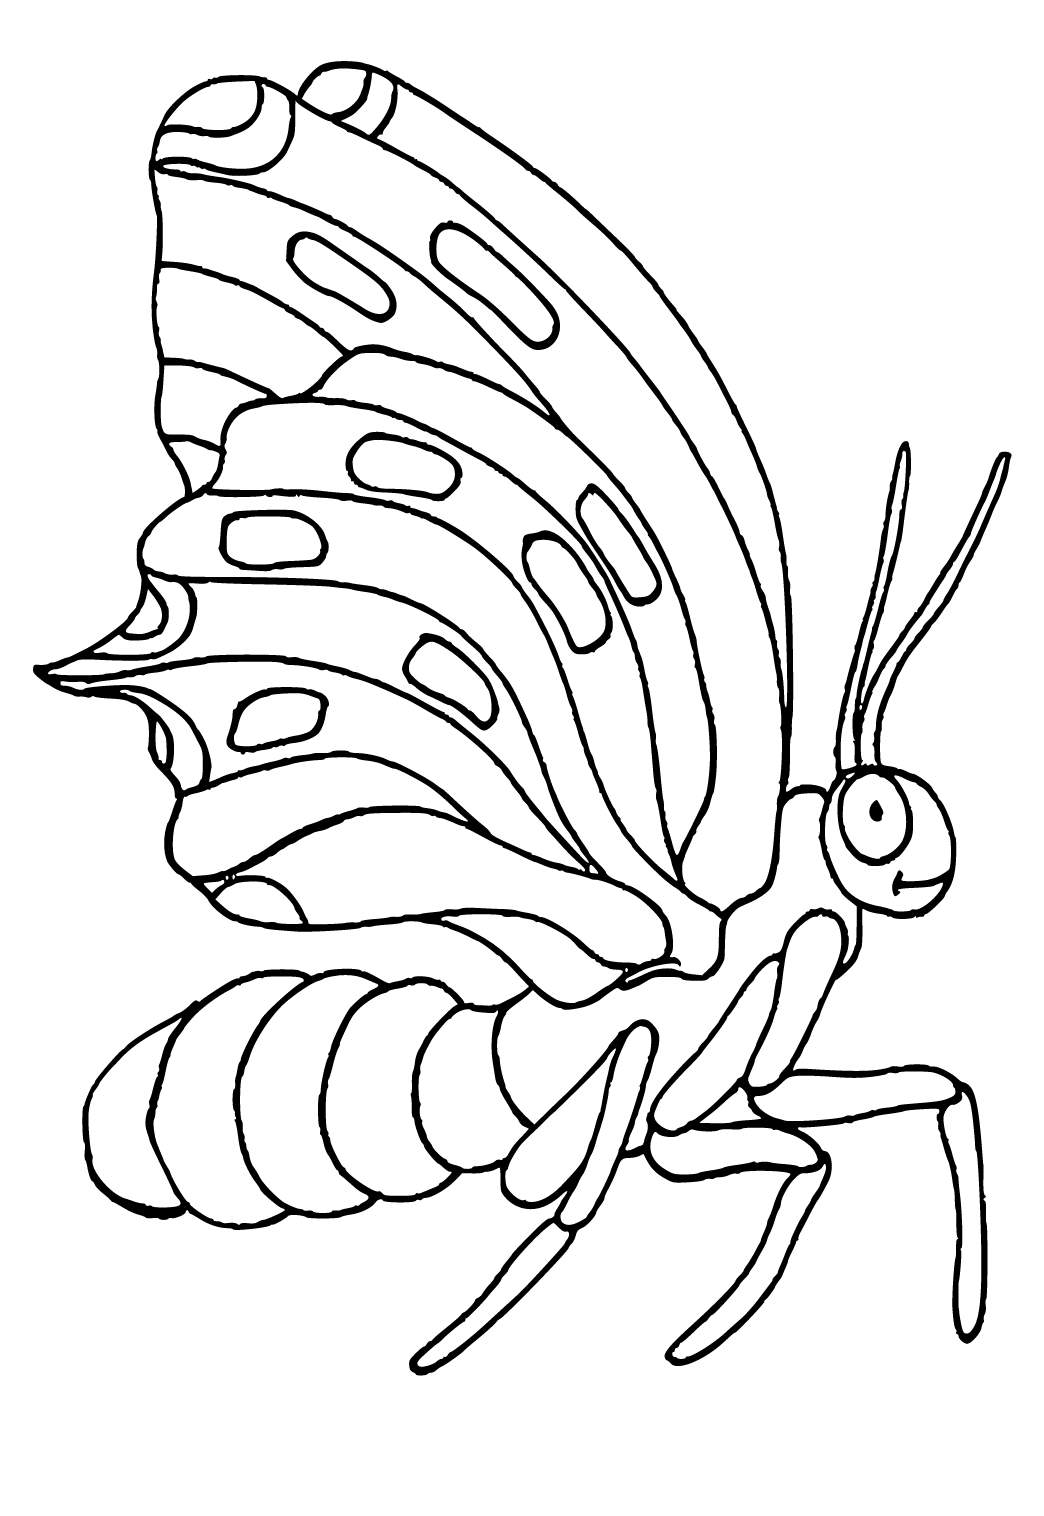 Desenhos de insetos para colorir para crianças